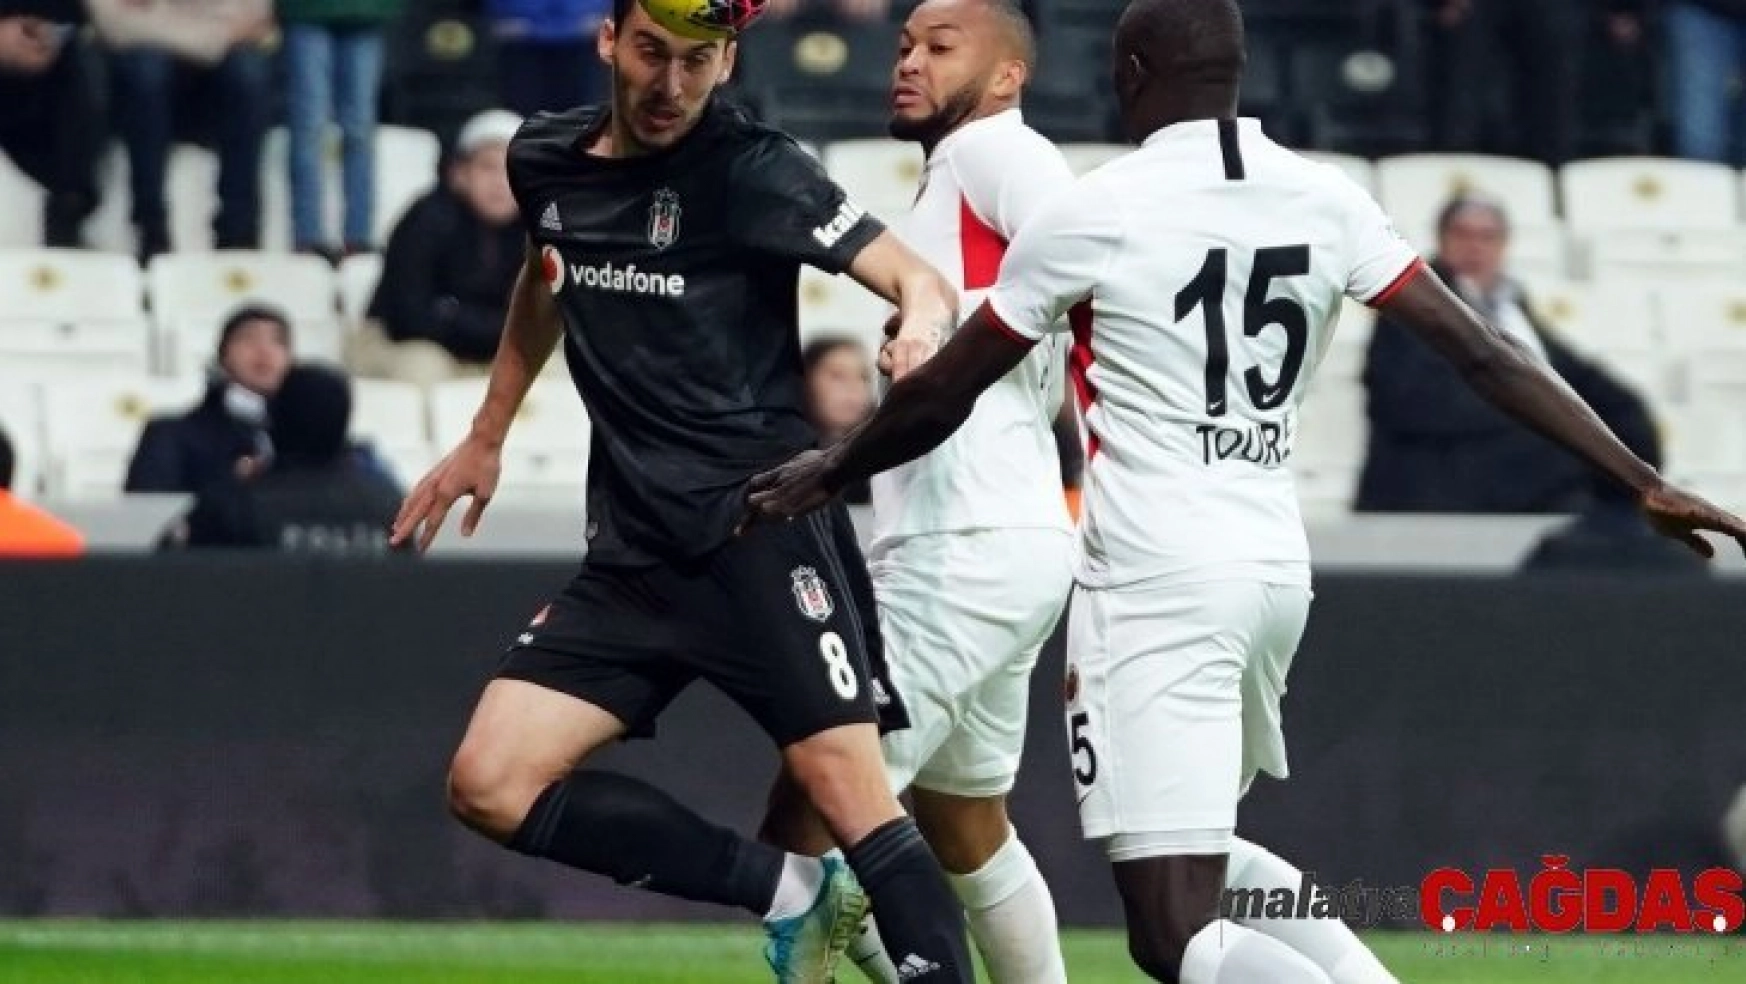 Süper Lig: Beşiktaş: 4 - Gençlerbirliği: 1 (Maç sonucu)